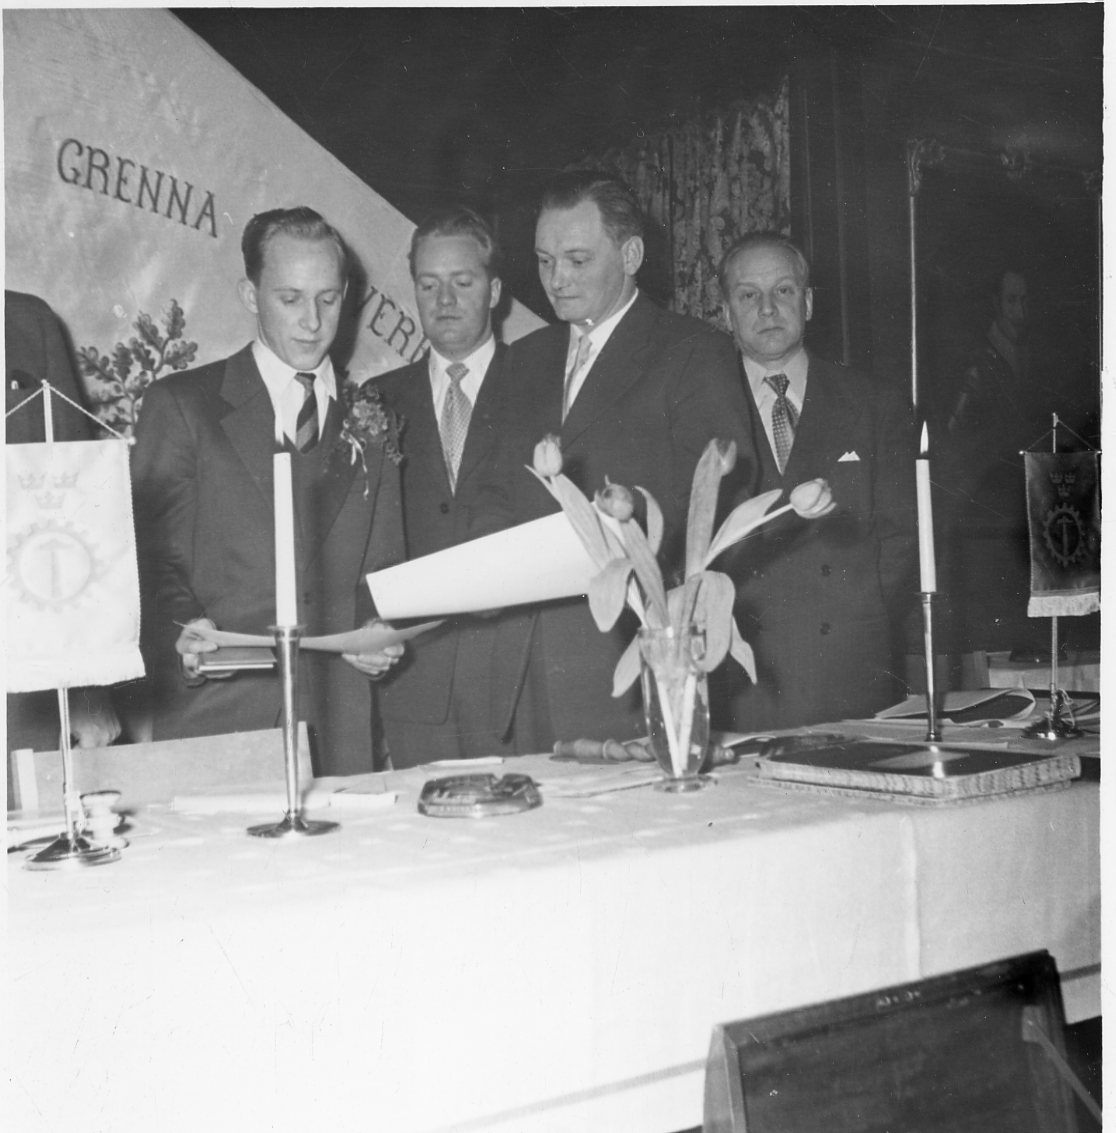 Fyra kostymklädda män med papper i händerna står bakom ett bord med tända ljus, tulpaner och bordsstandar. Bakom dem möjligen en fana med texten: "Grenna Hantverksförening"